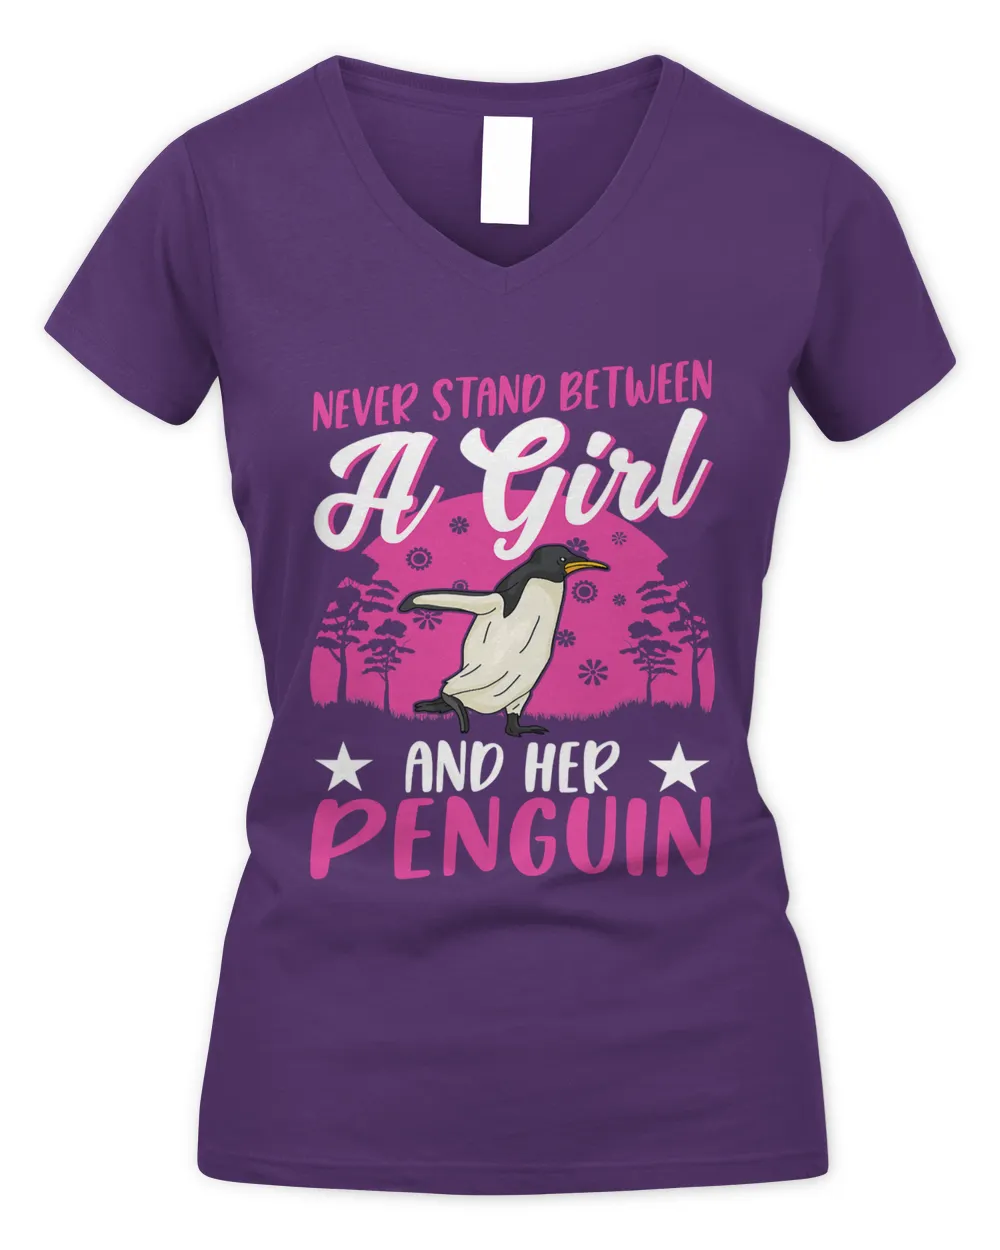 Penguin Girl Emperor Penguin 132